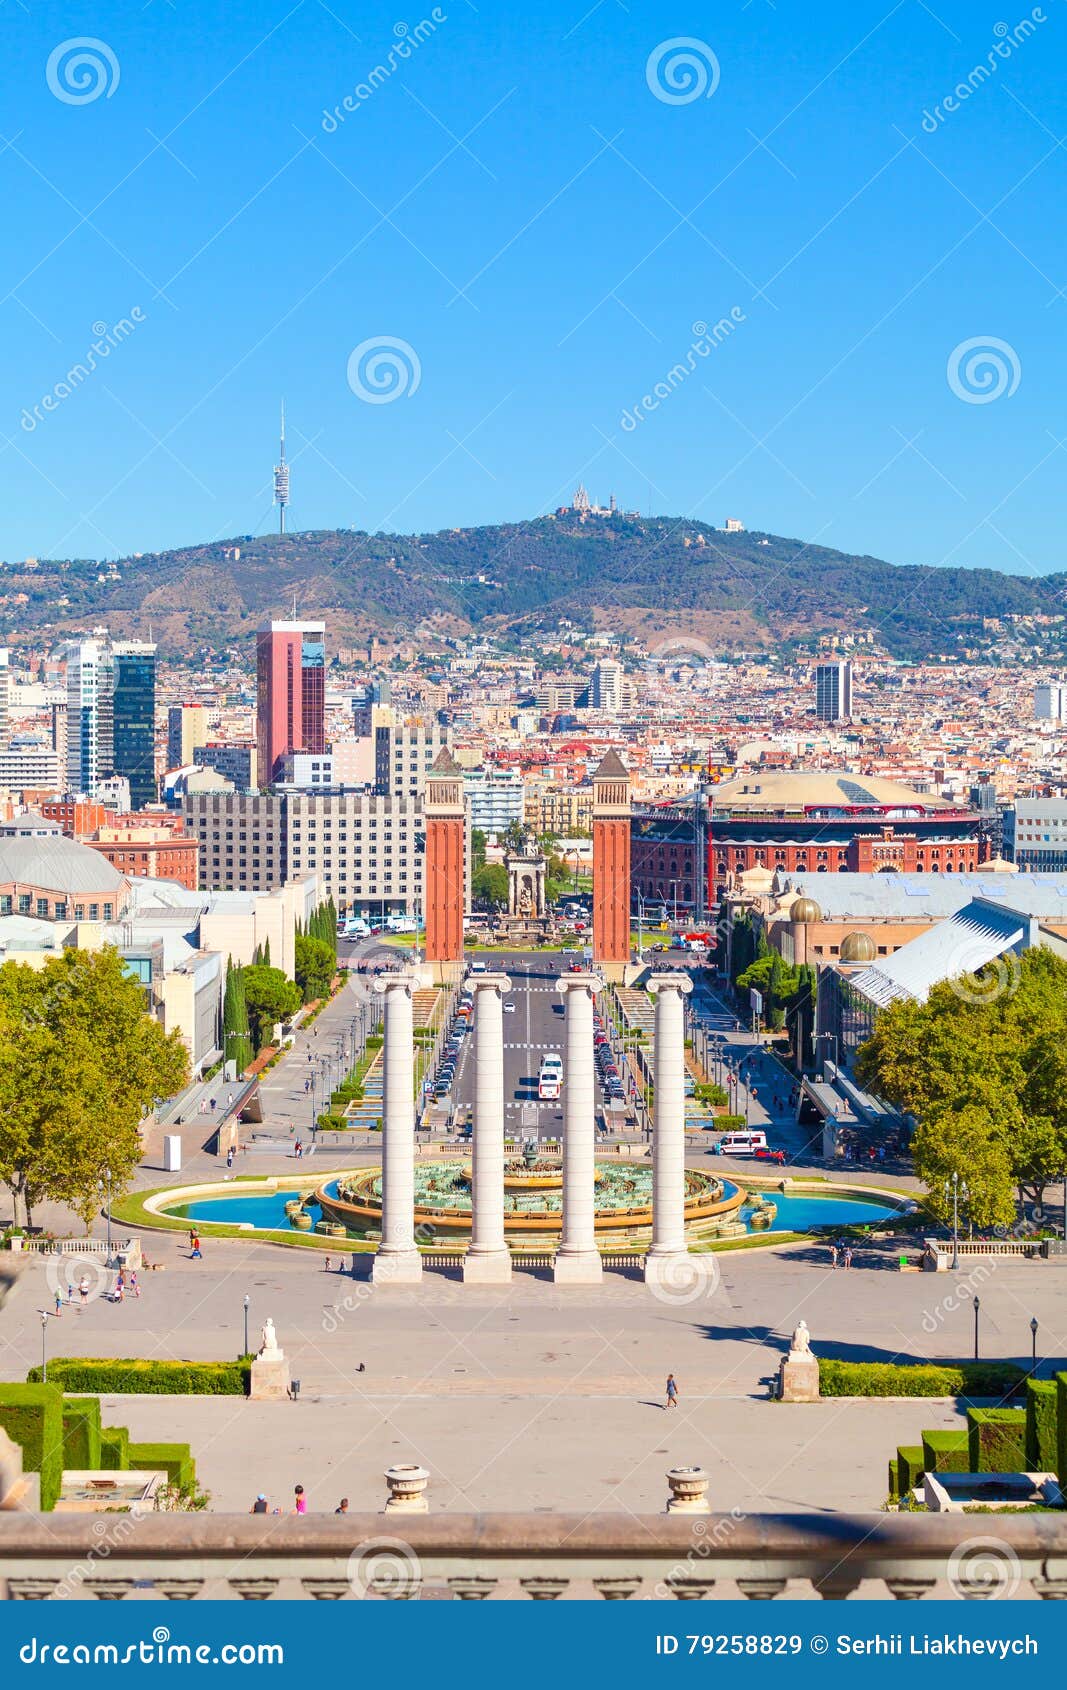 barcelona, square of spain, plaza de espana